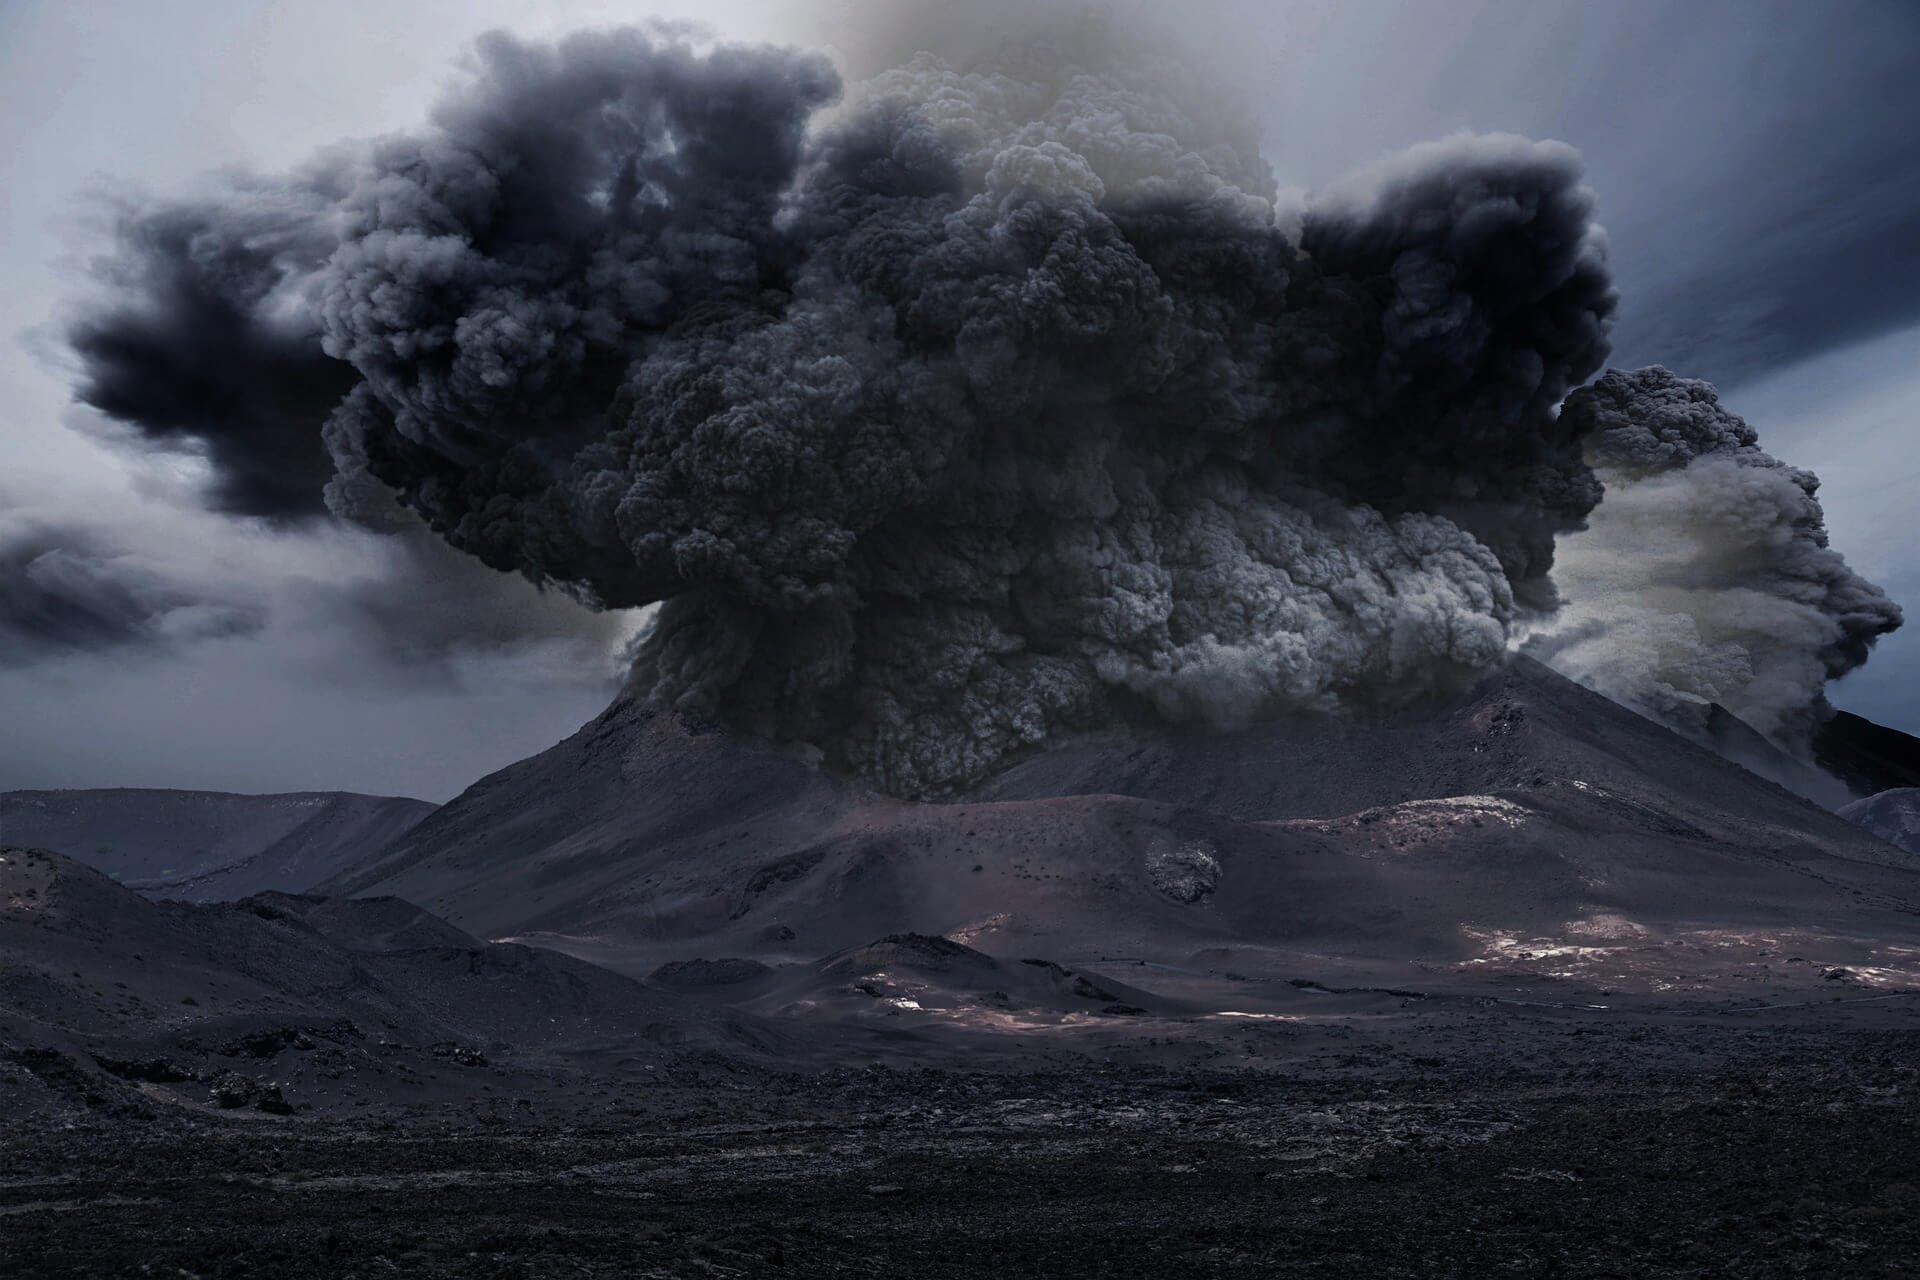 Год без лета – вулканическое извержение и его последствия. Извержение вулкана можно предсказать, хотя и с трудом, а остановить его последствия невозможно. Фото.